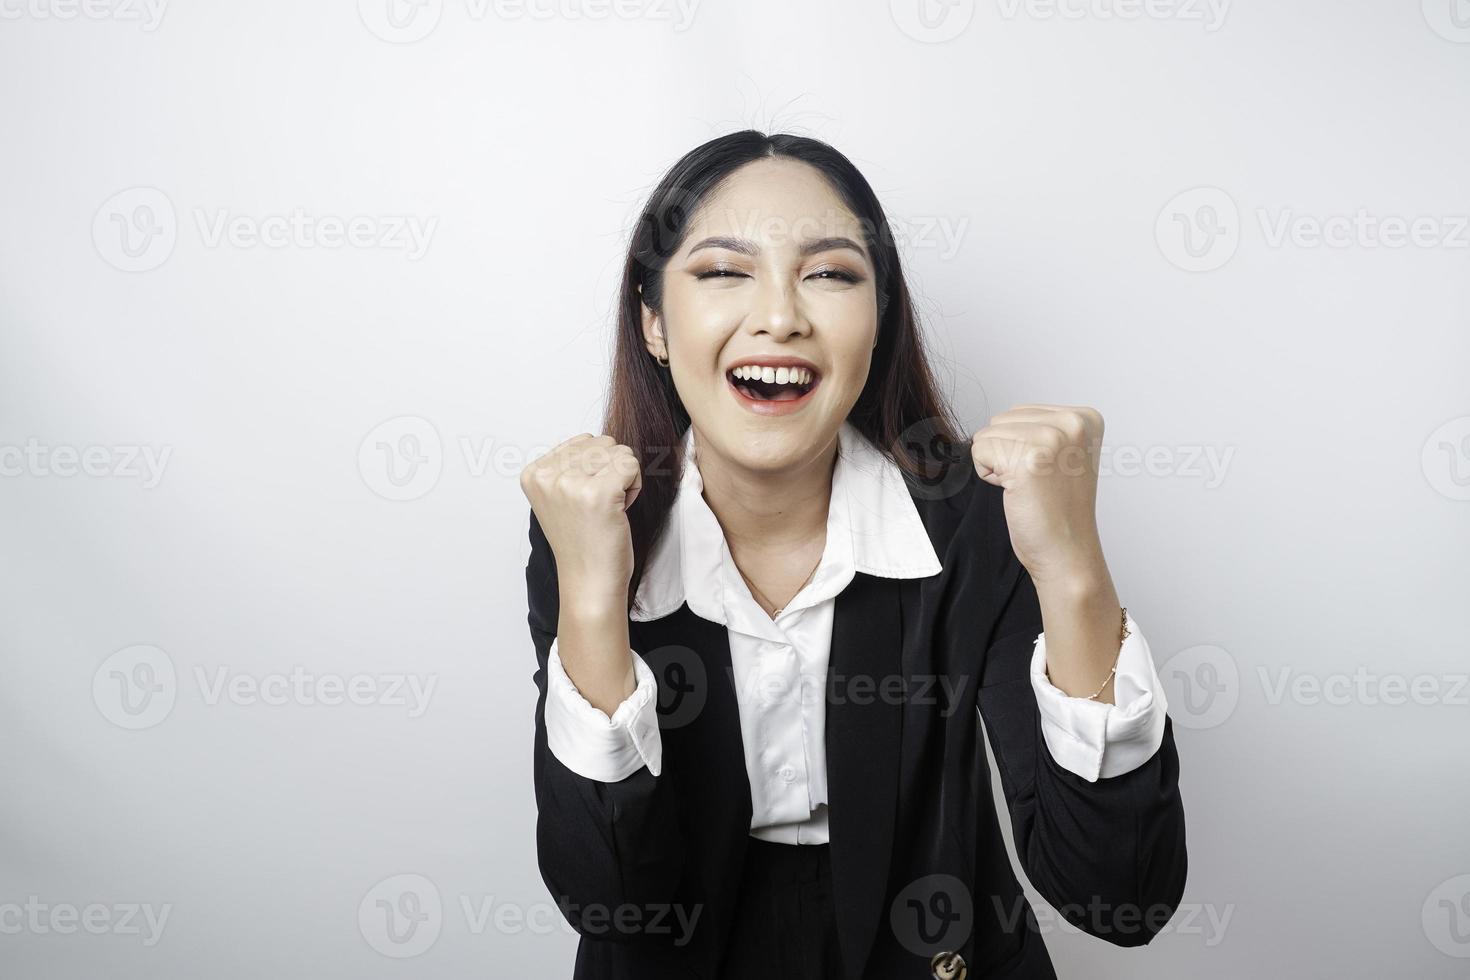 eine junge asiatische geschäftsfrau mit einem glücklichen erfolgreichen ausdruck, der schwarzen anzug trägt, der durch weißen hintergrund getrennt wird foto